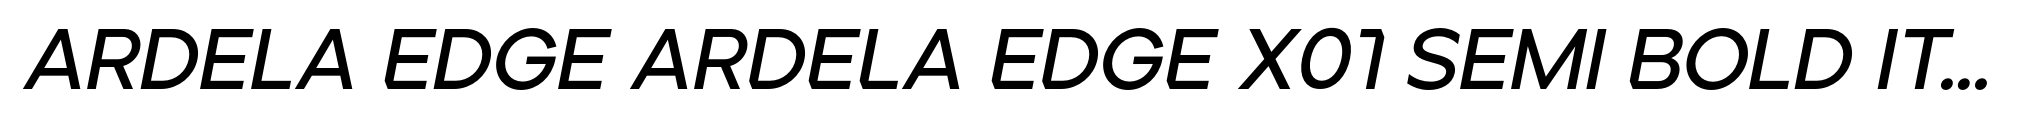 Ardela Edge ARDELA EDGE X01 Semi Bold Italic image